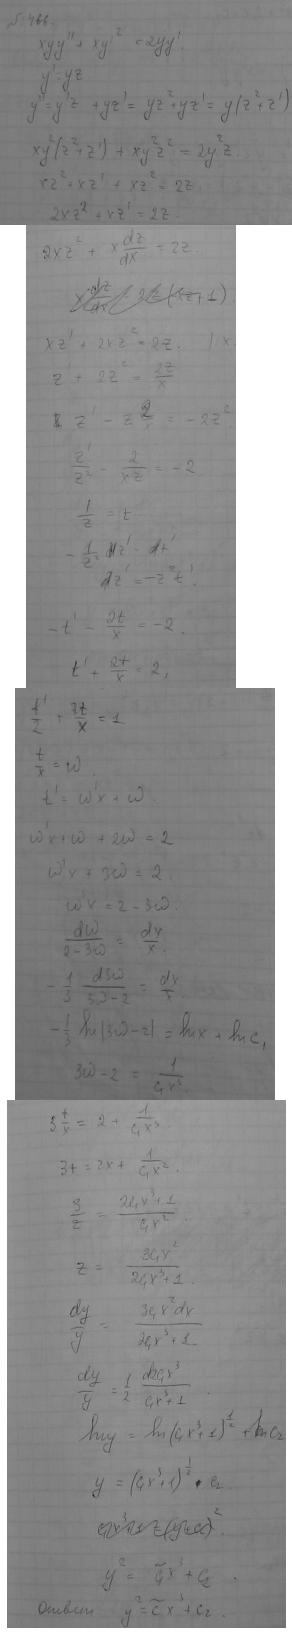 Уравнения, допускающие понижение порядка - решение задачи 466